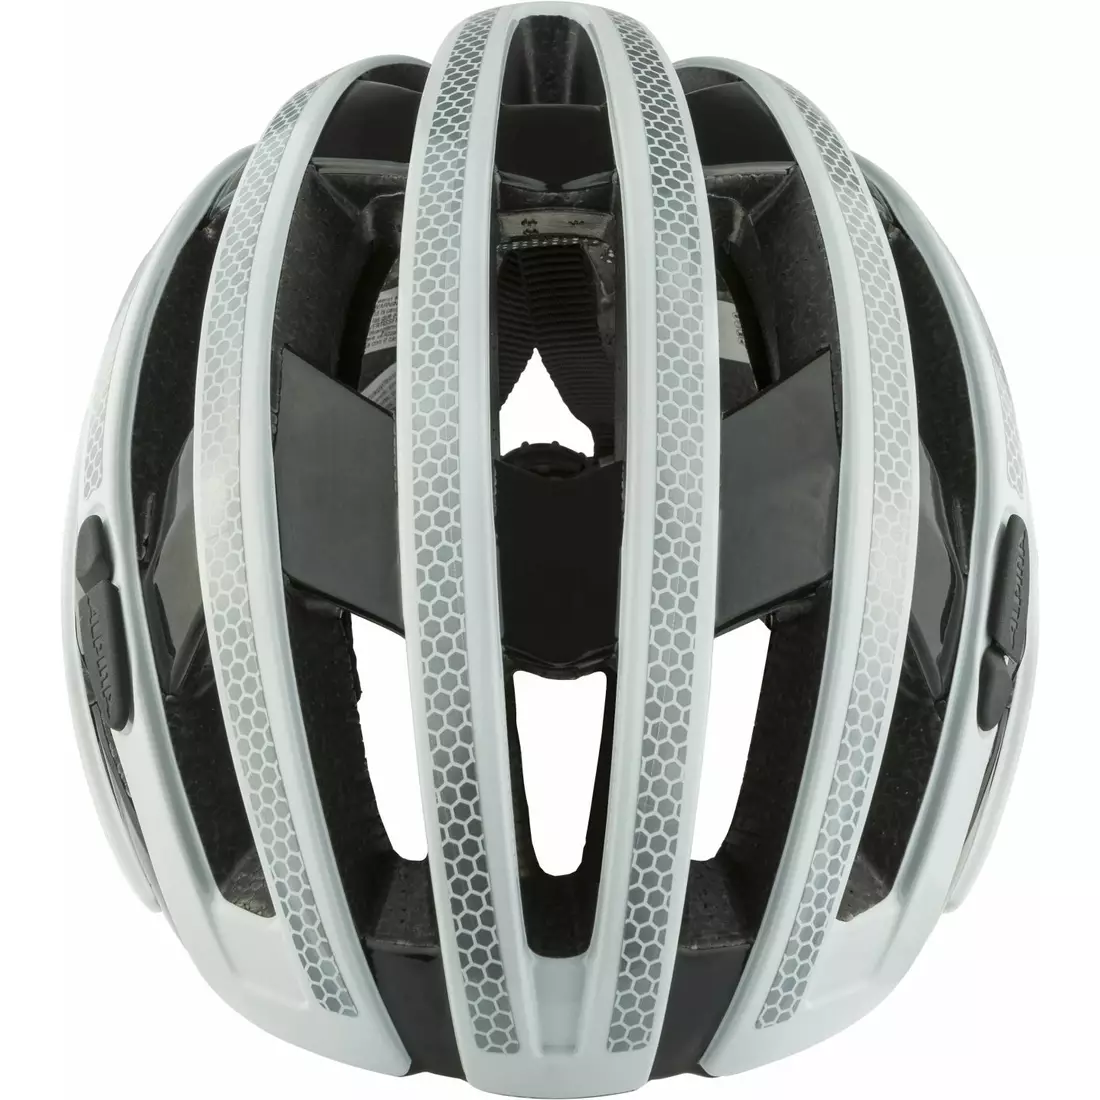 ALPINA RAVEL helma na silniční kolo, reflective white gloss